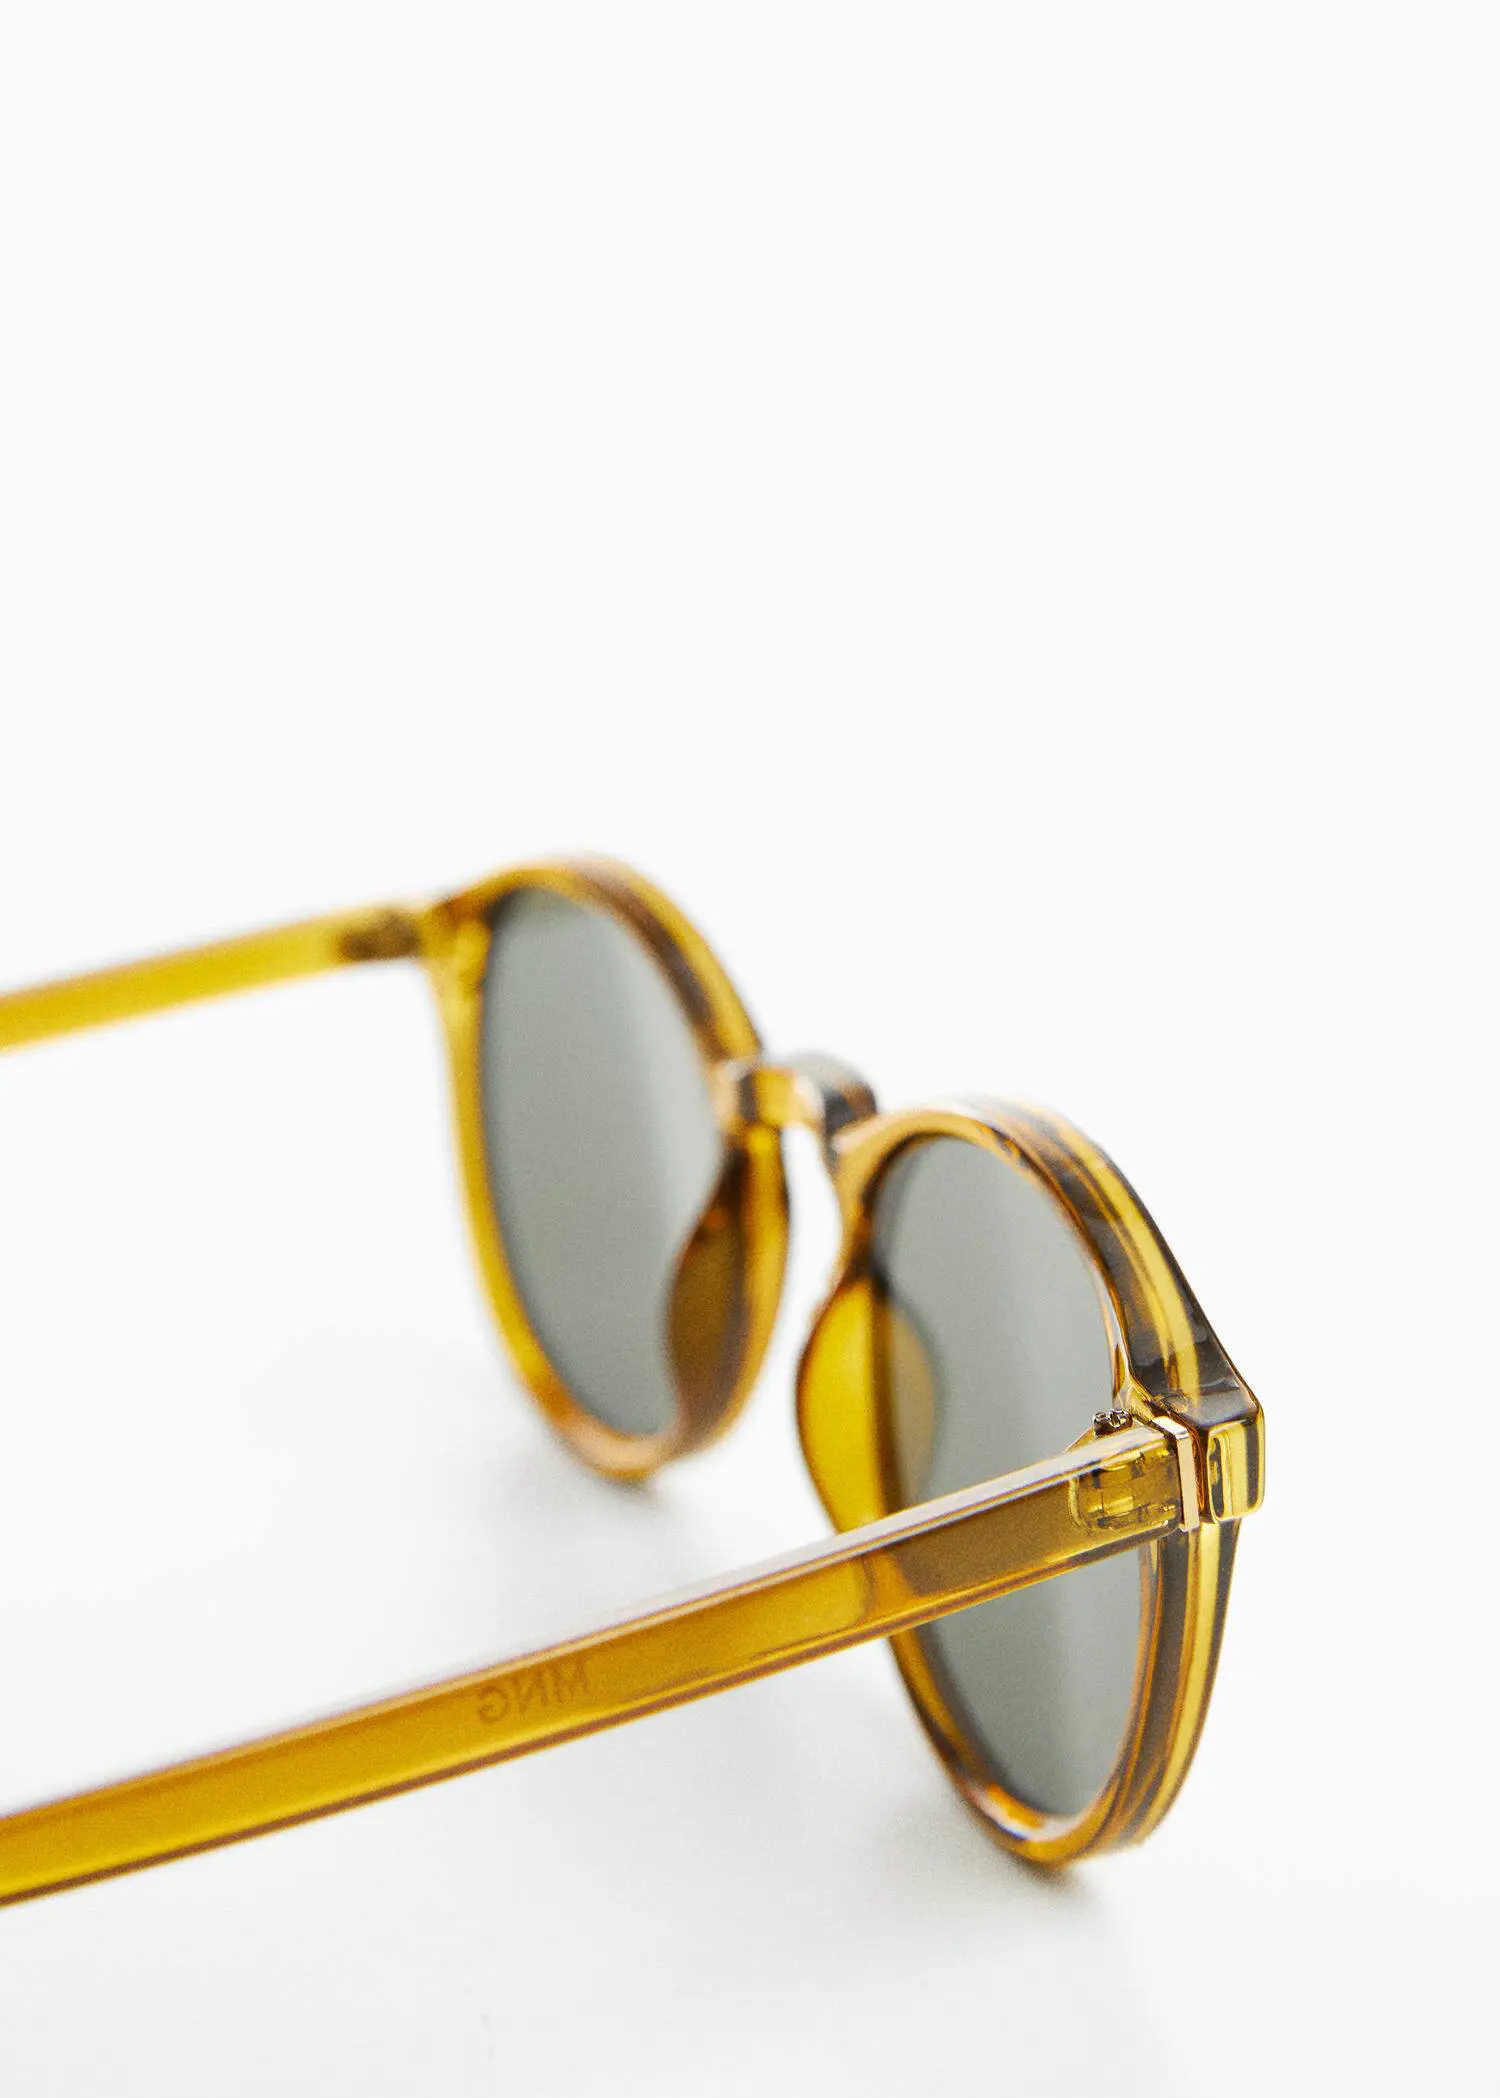 Mango Polarised sunglasses. 3